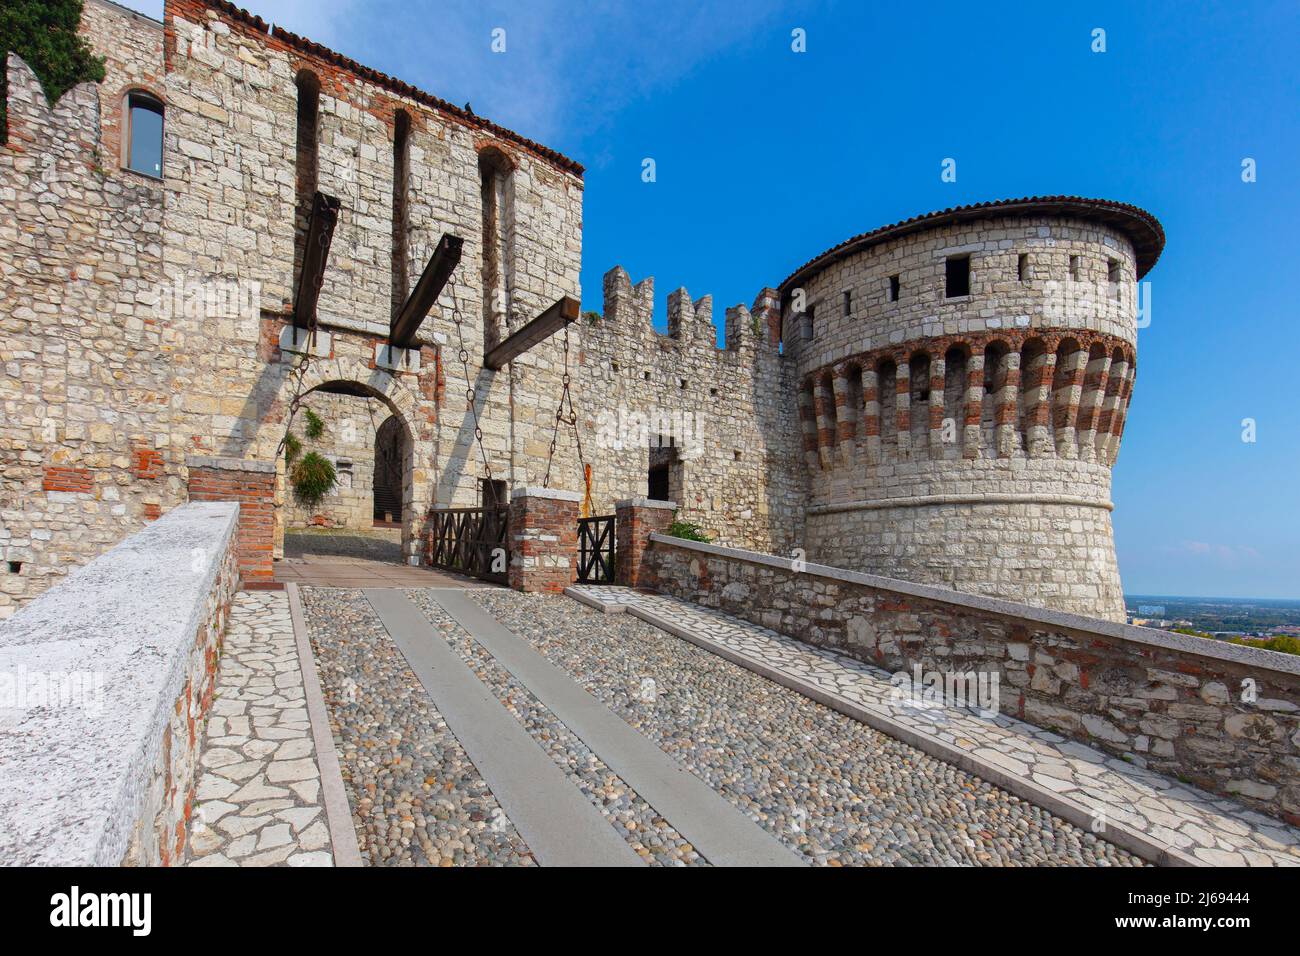 The castle, Brescia, Lombardia (Lombardy), Italy Stock Photo